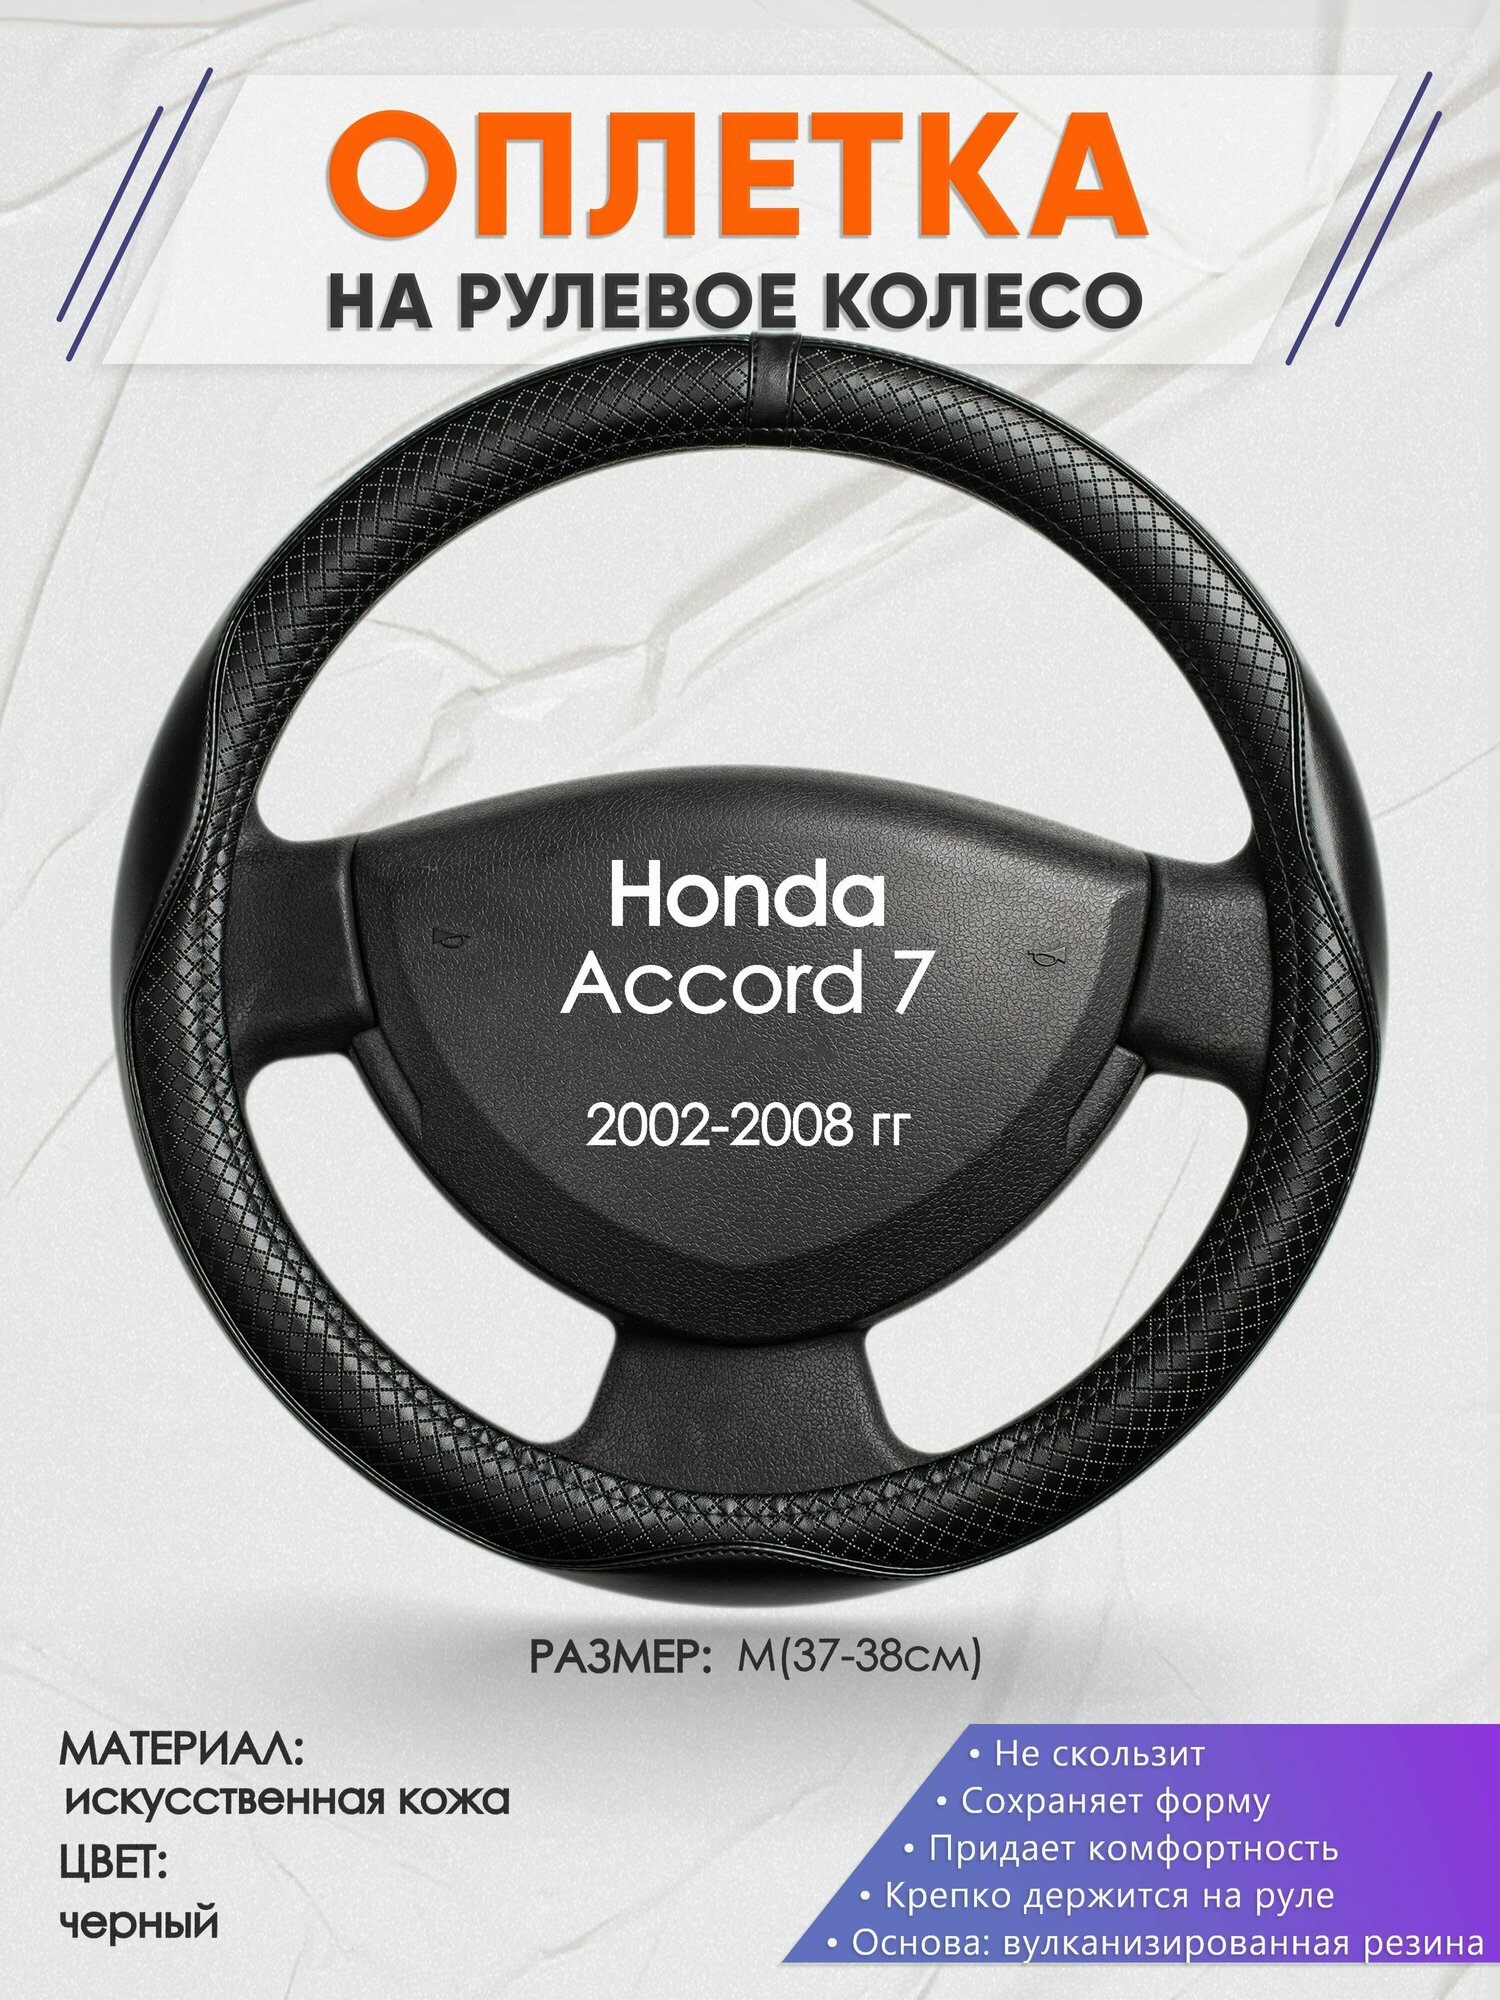 Оплетка на руль для Honda Accord 7(Хонда Аккорд 7) 2002-2008, M(37-38см), Искусственная кожа 87